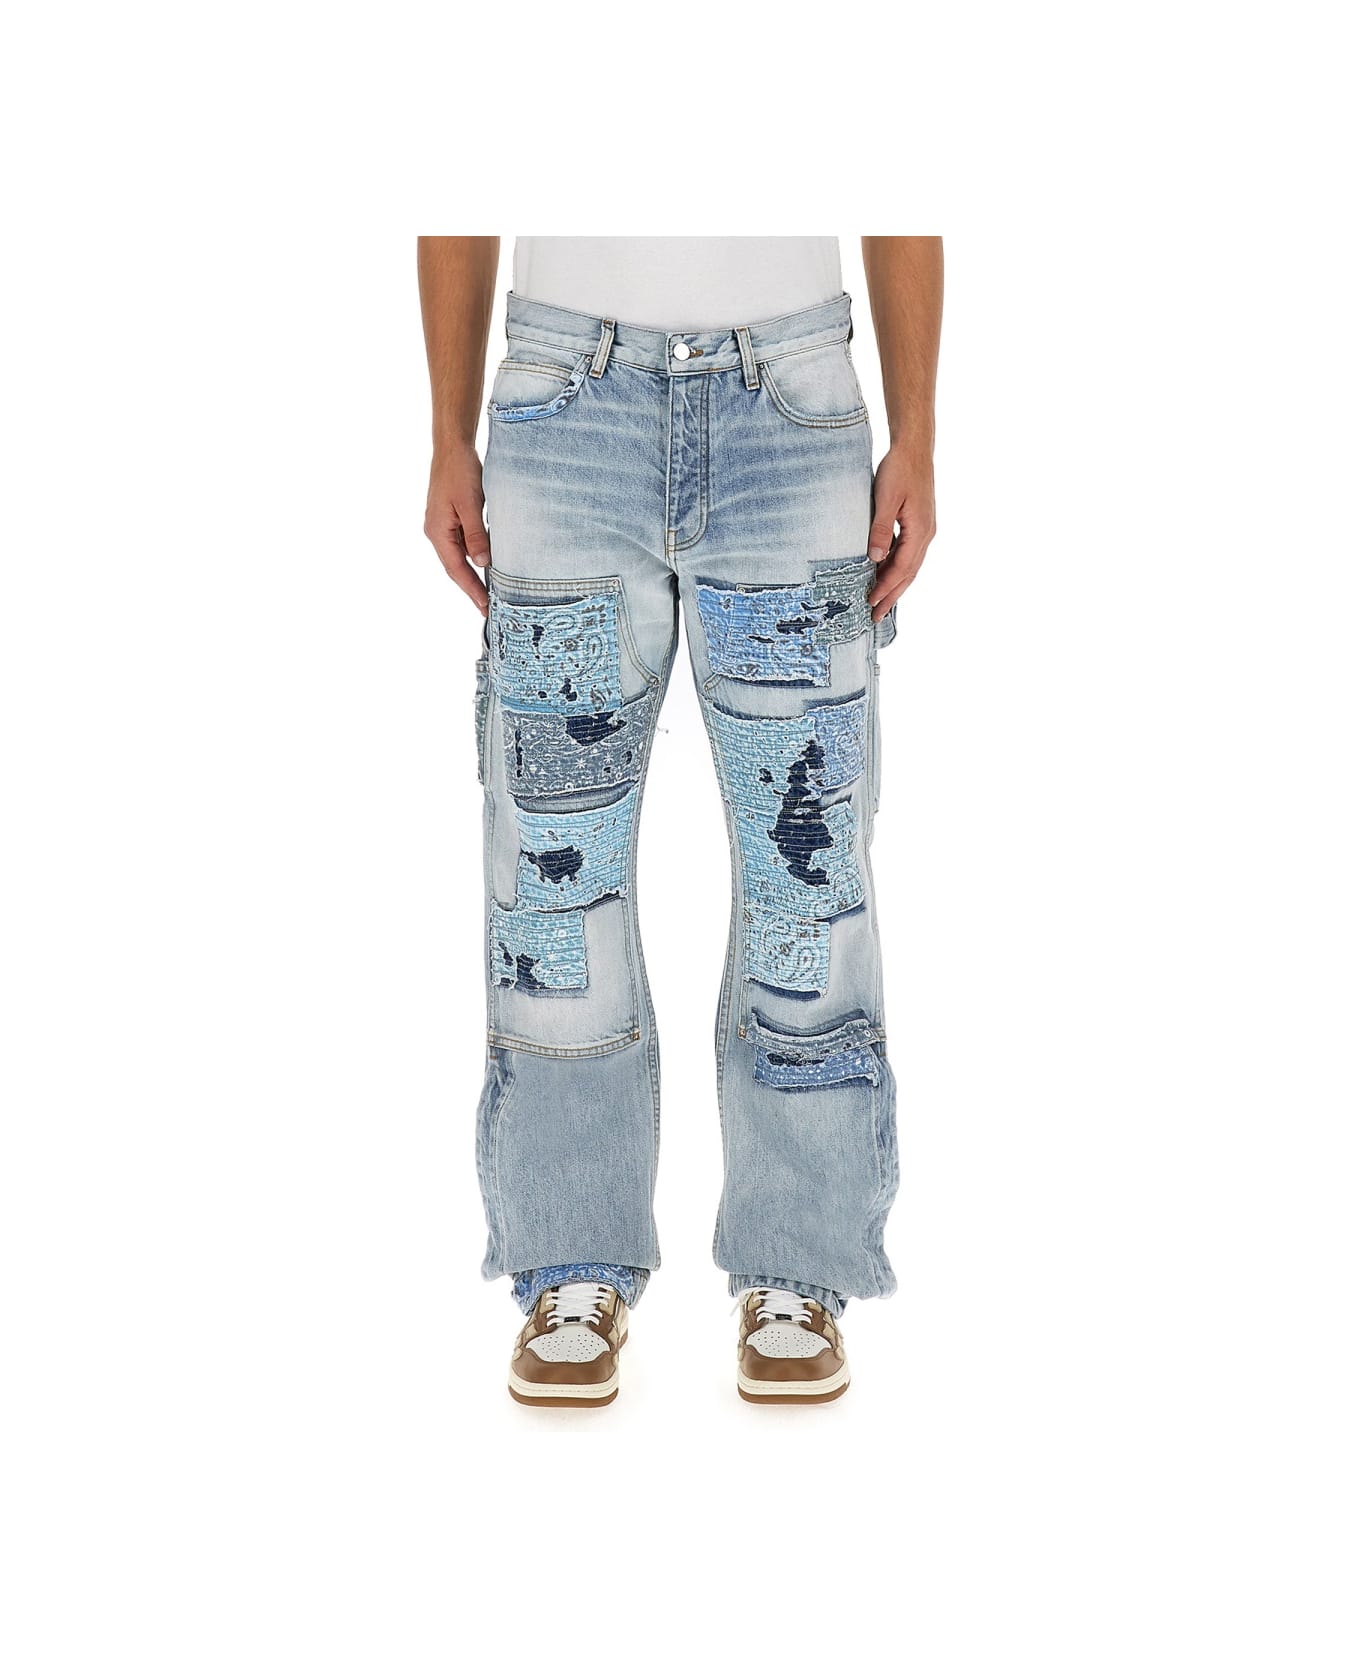 AMIRI Carpenter Jeans - DENIM